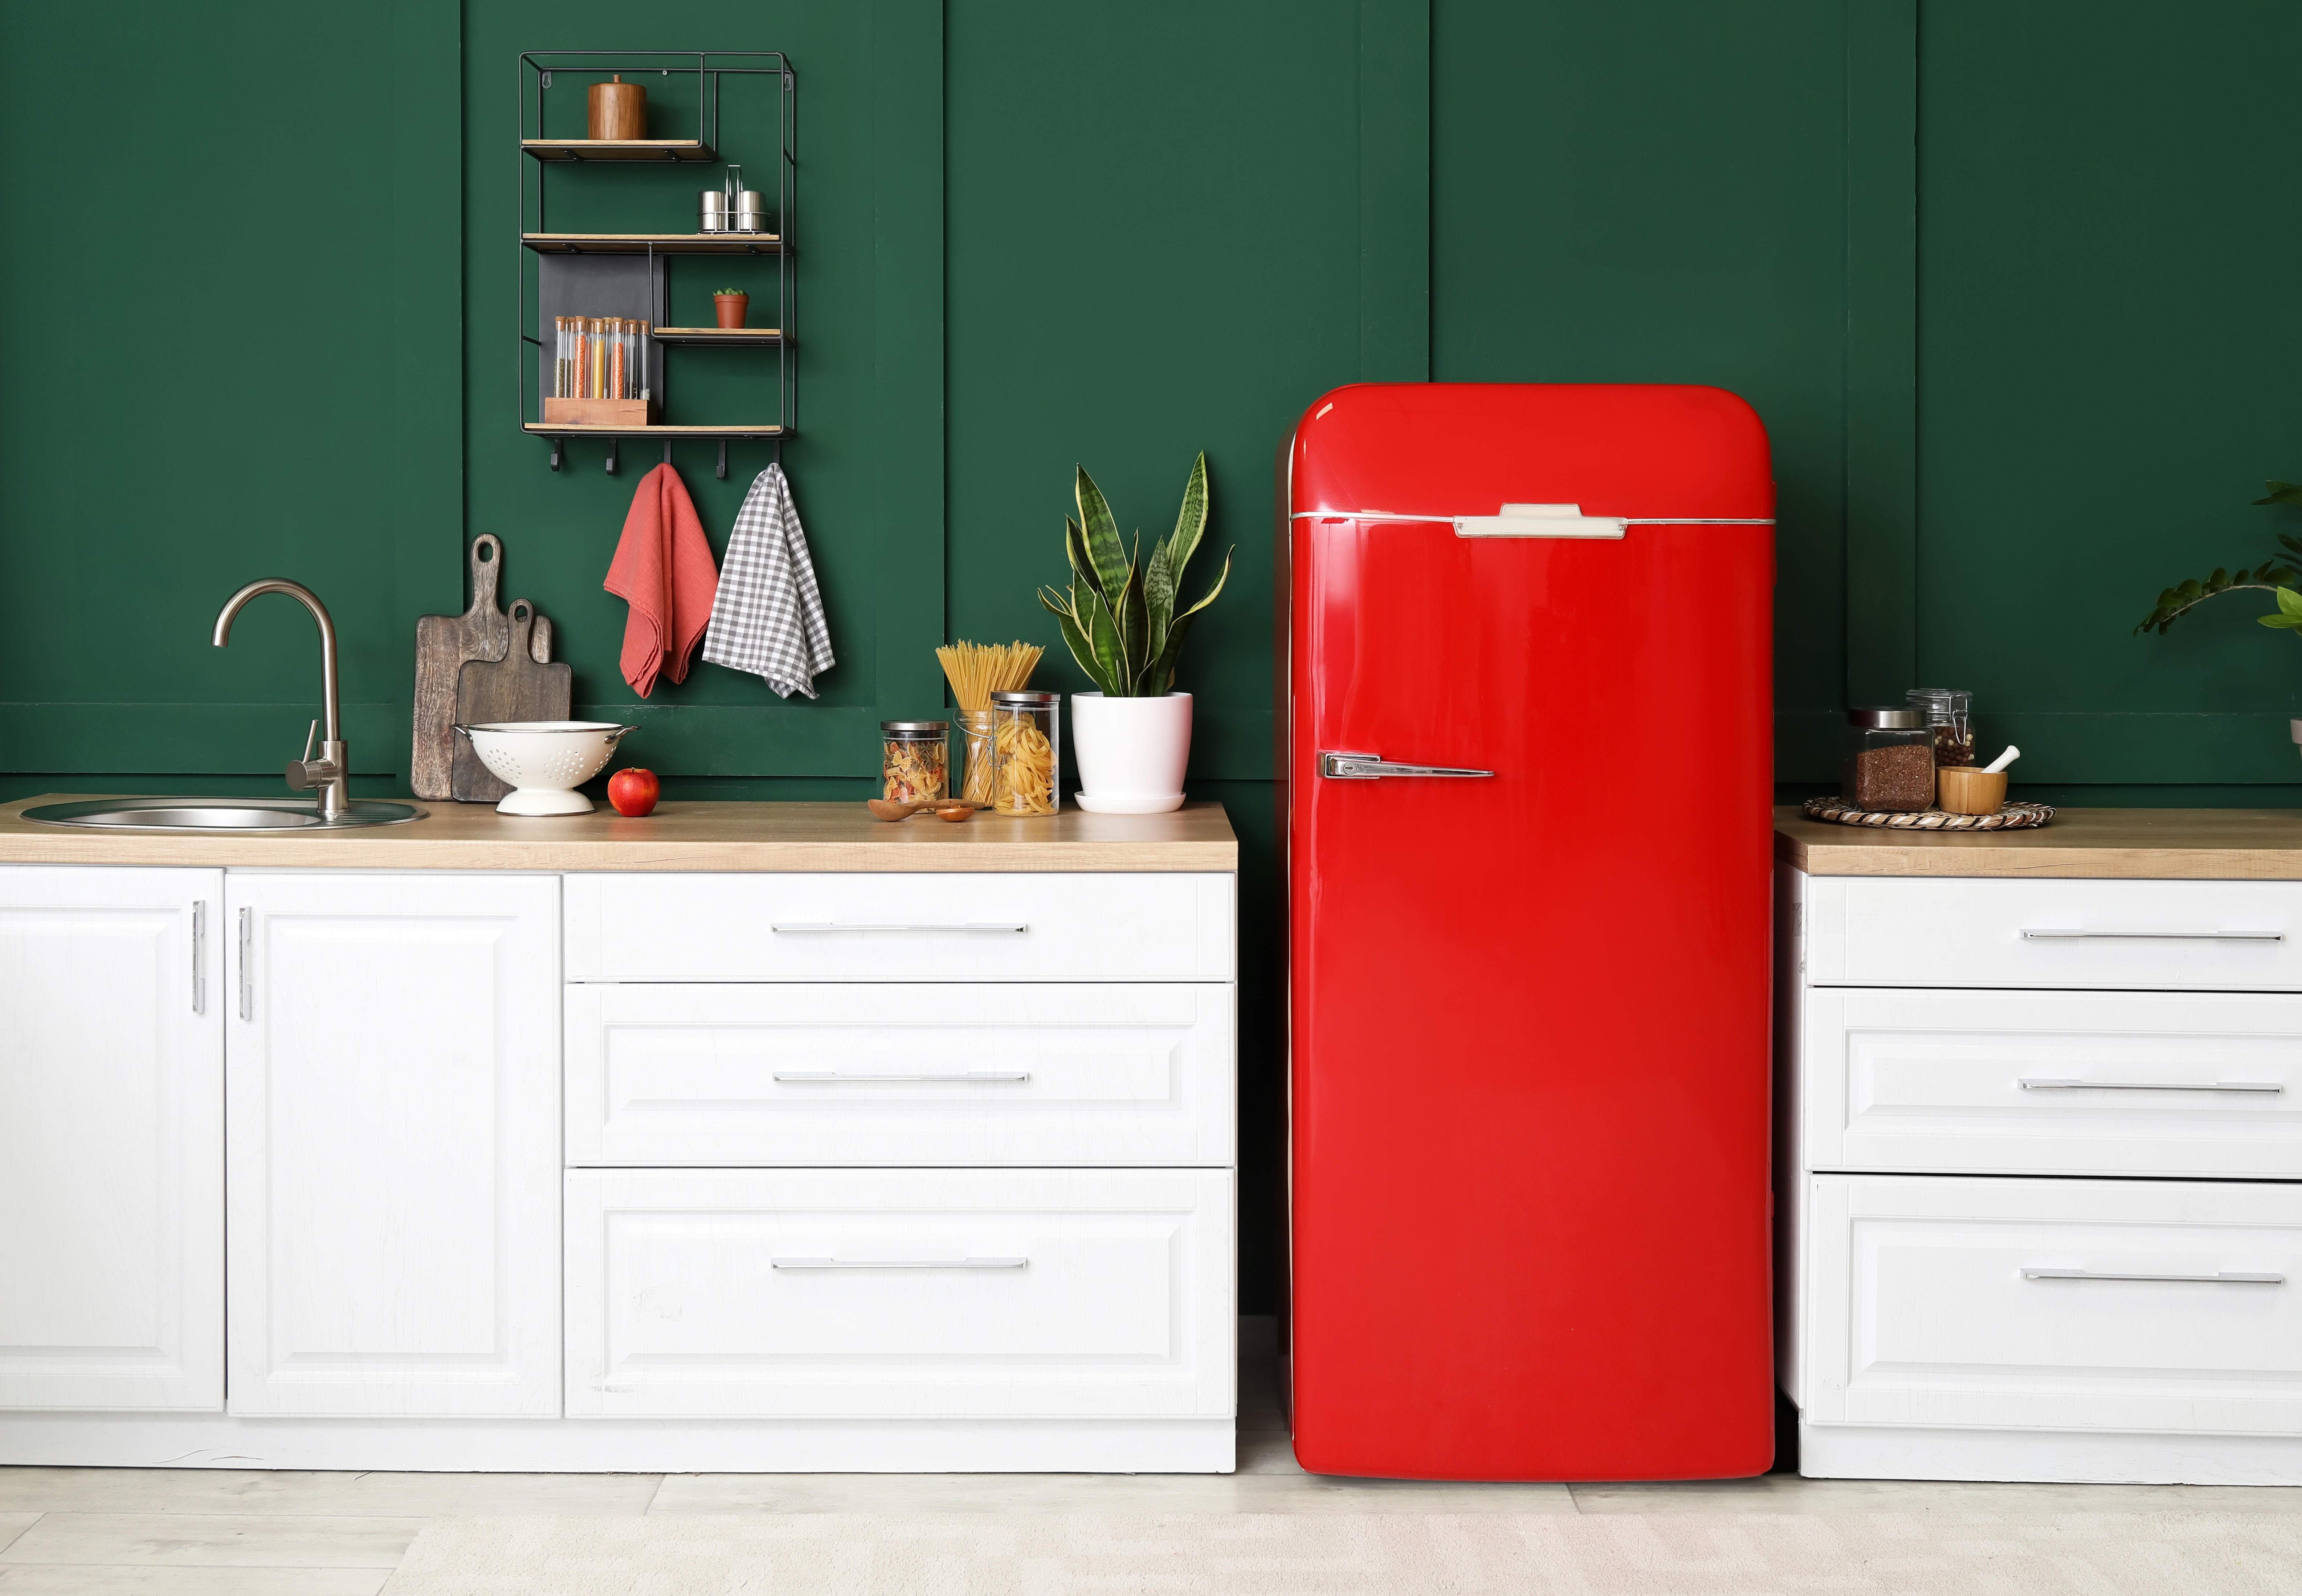 Une cuisine moderne et propre avec un réfrigérateur rouge contre un mur vert foncé